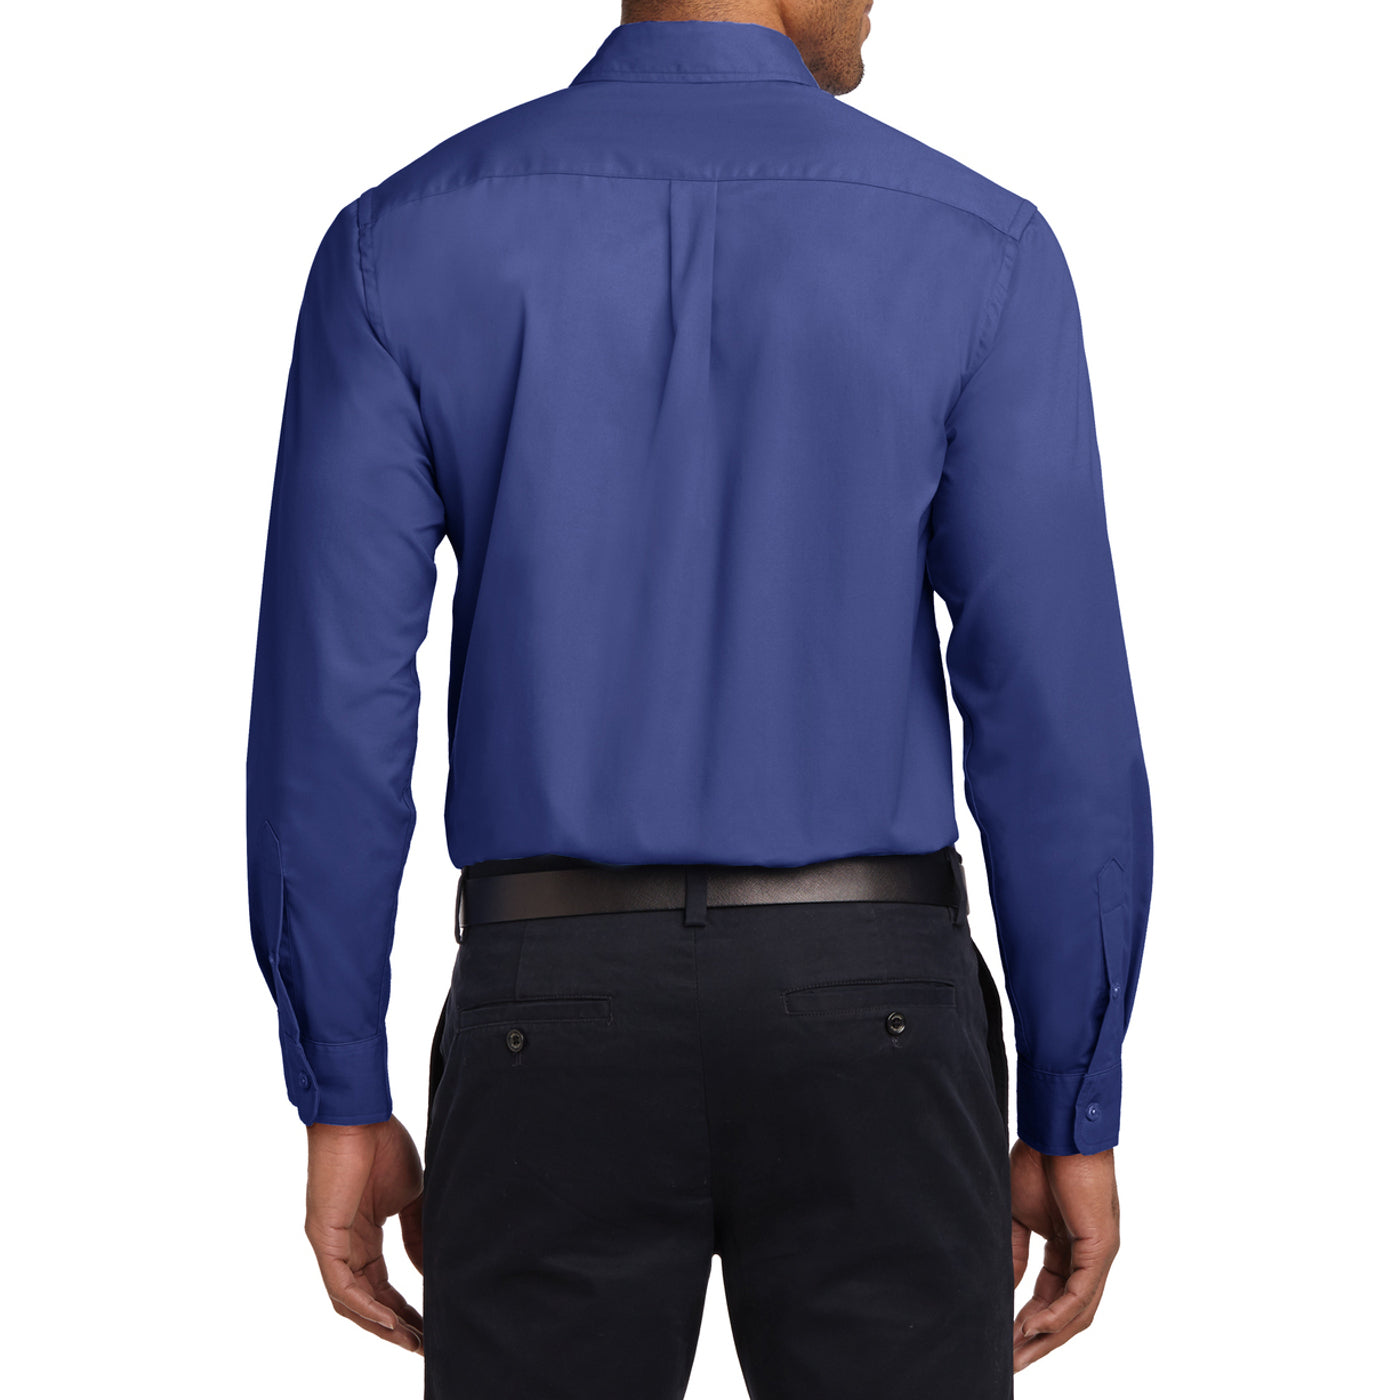 Men's Long Sleeve Easy Care Shirt - Mediterranean Blue - Back